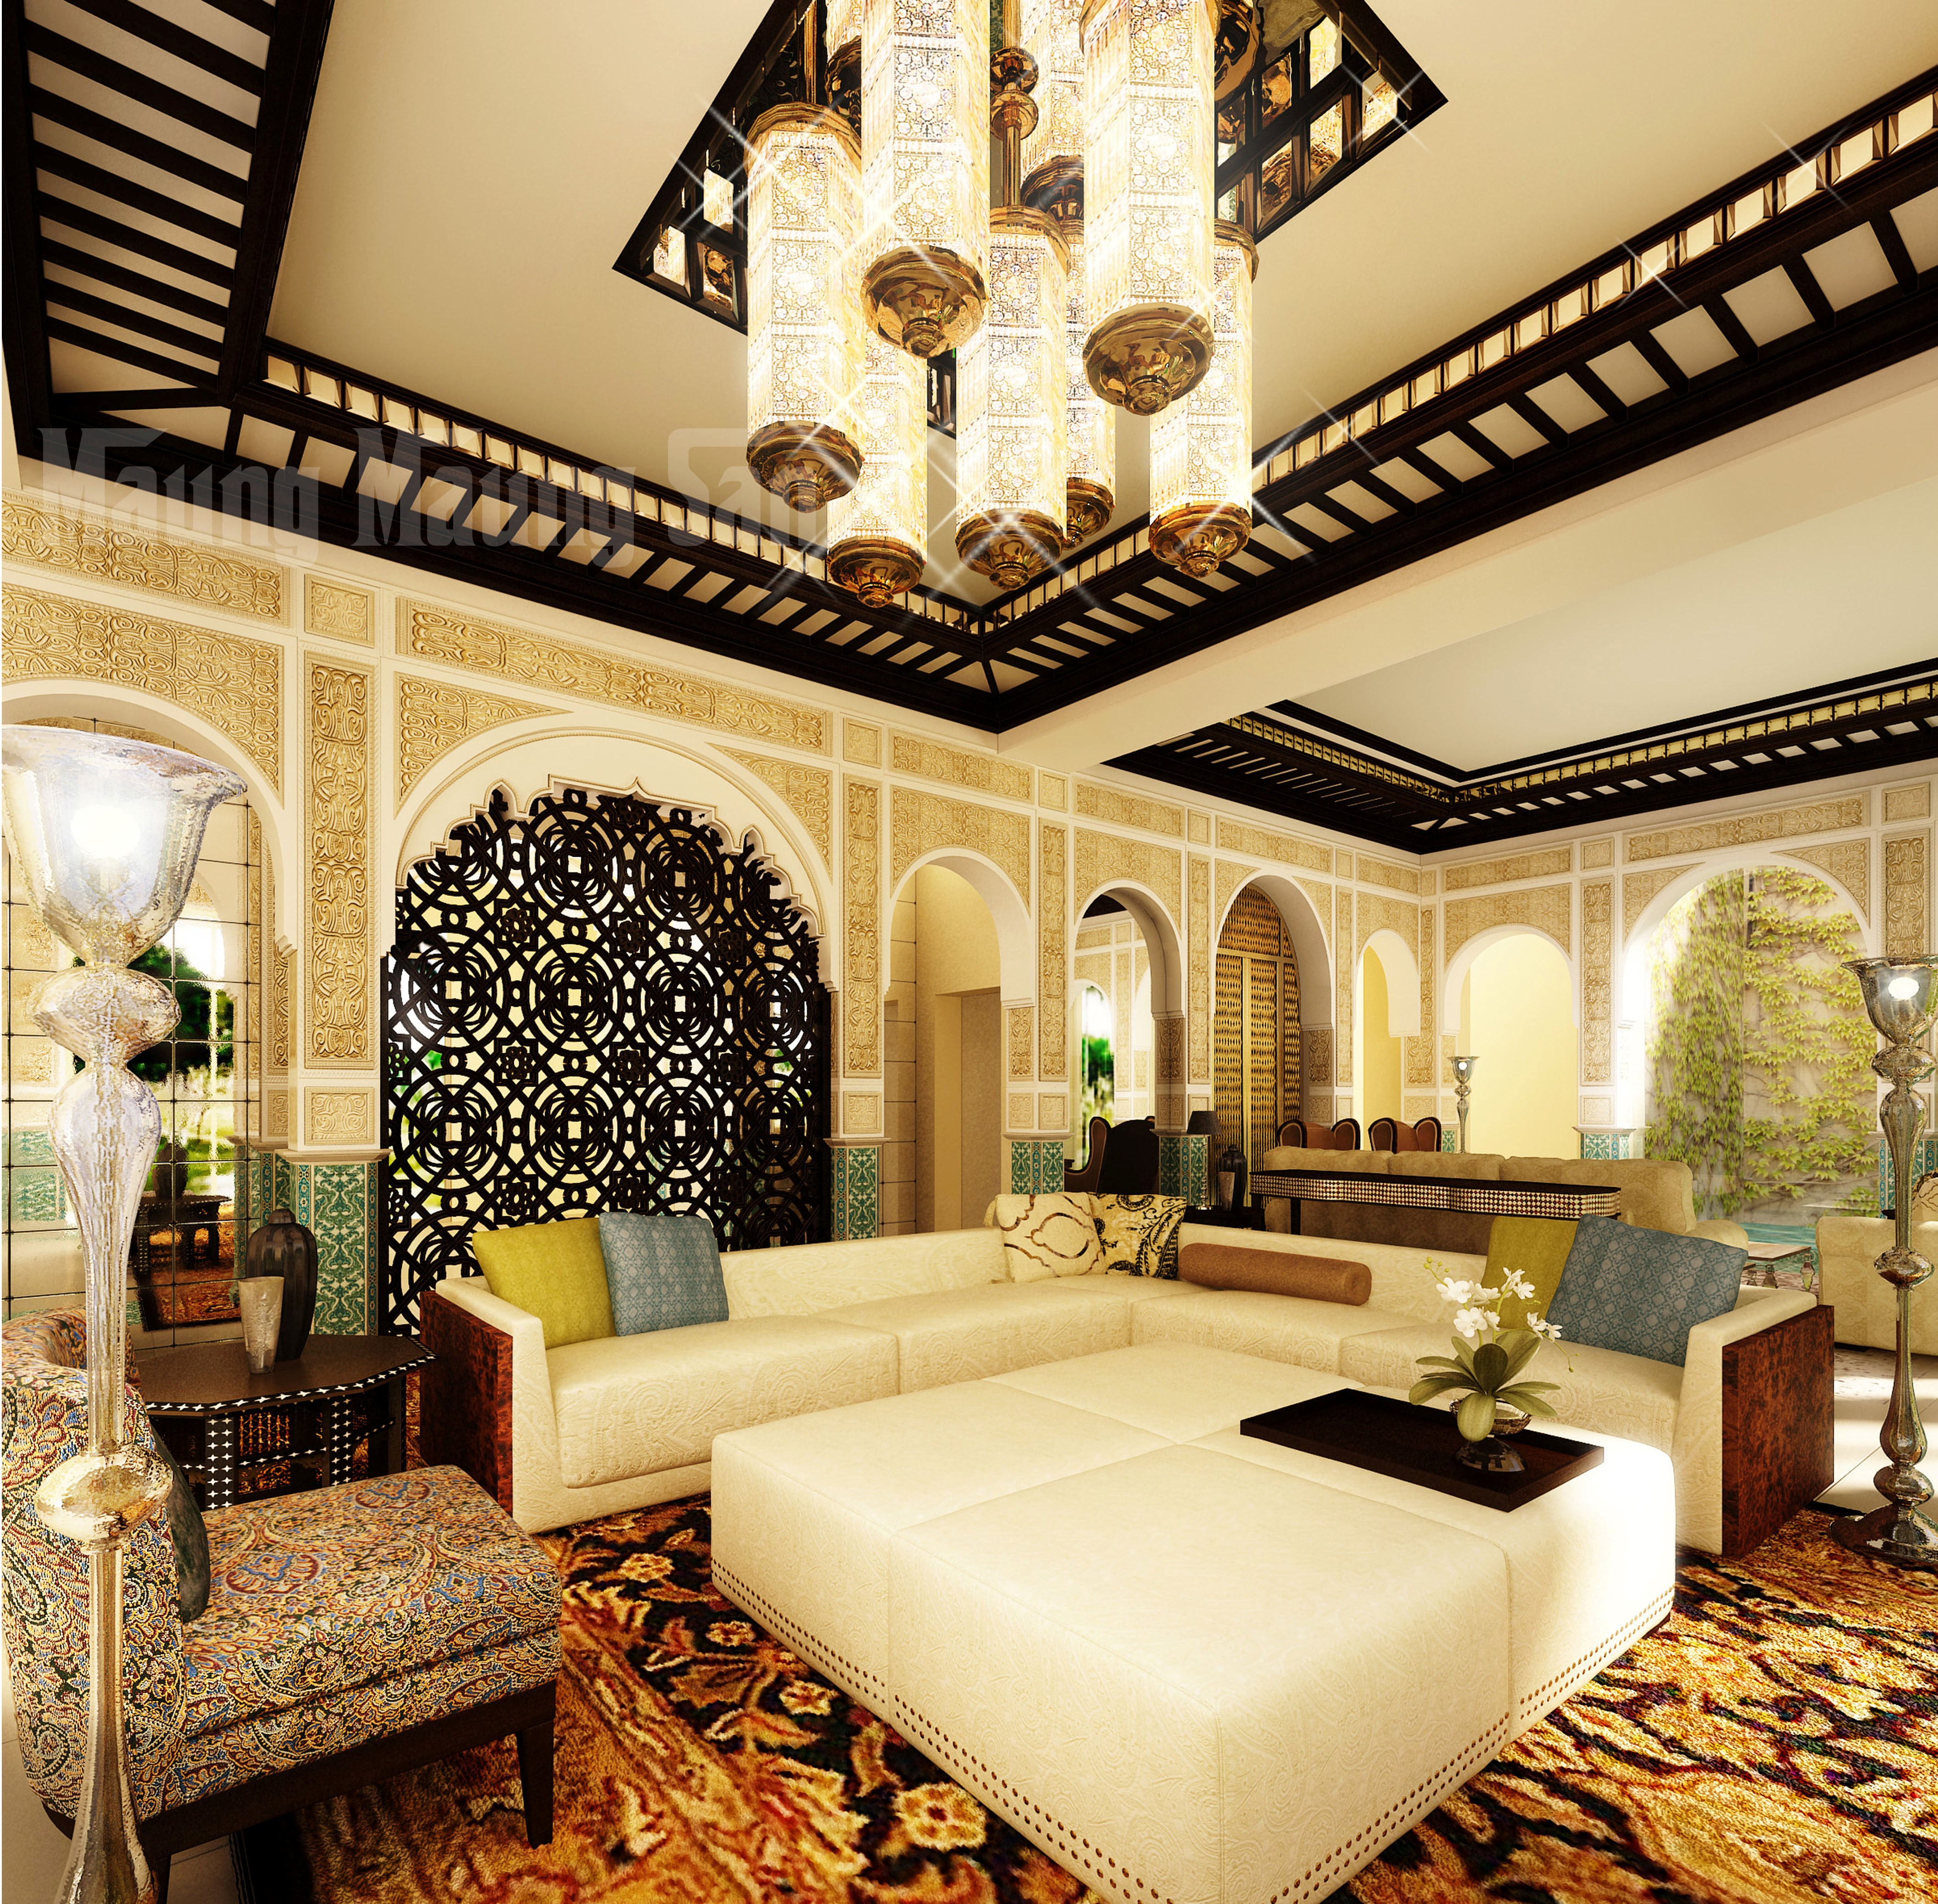 Furniture : Moroccan Home Interior Design With Unique Room Divider ...